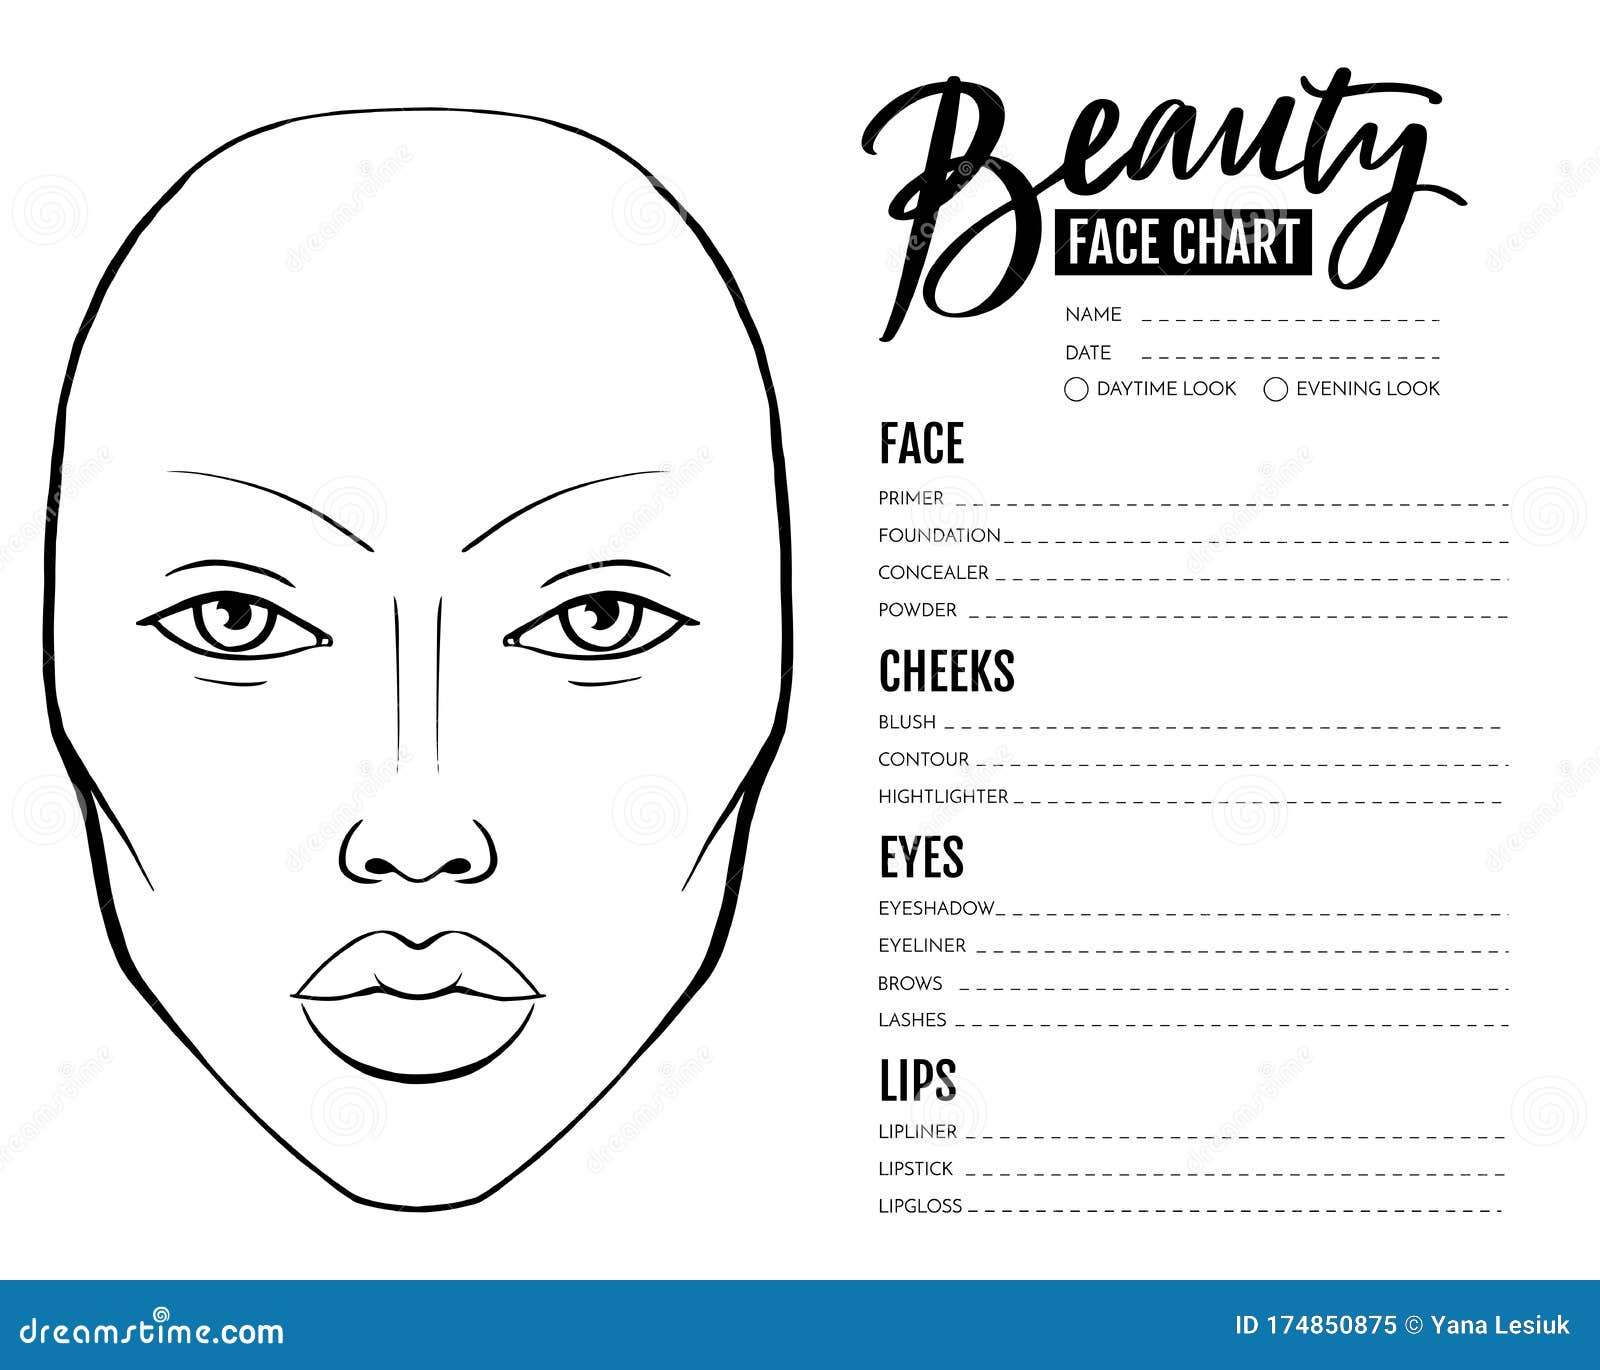 face-chart-makeup-artist-saubhaya-makeup